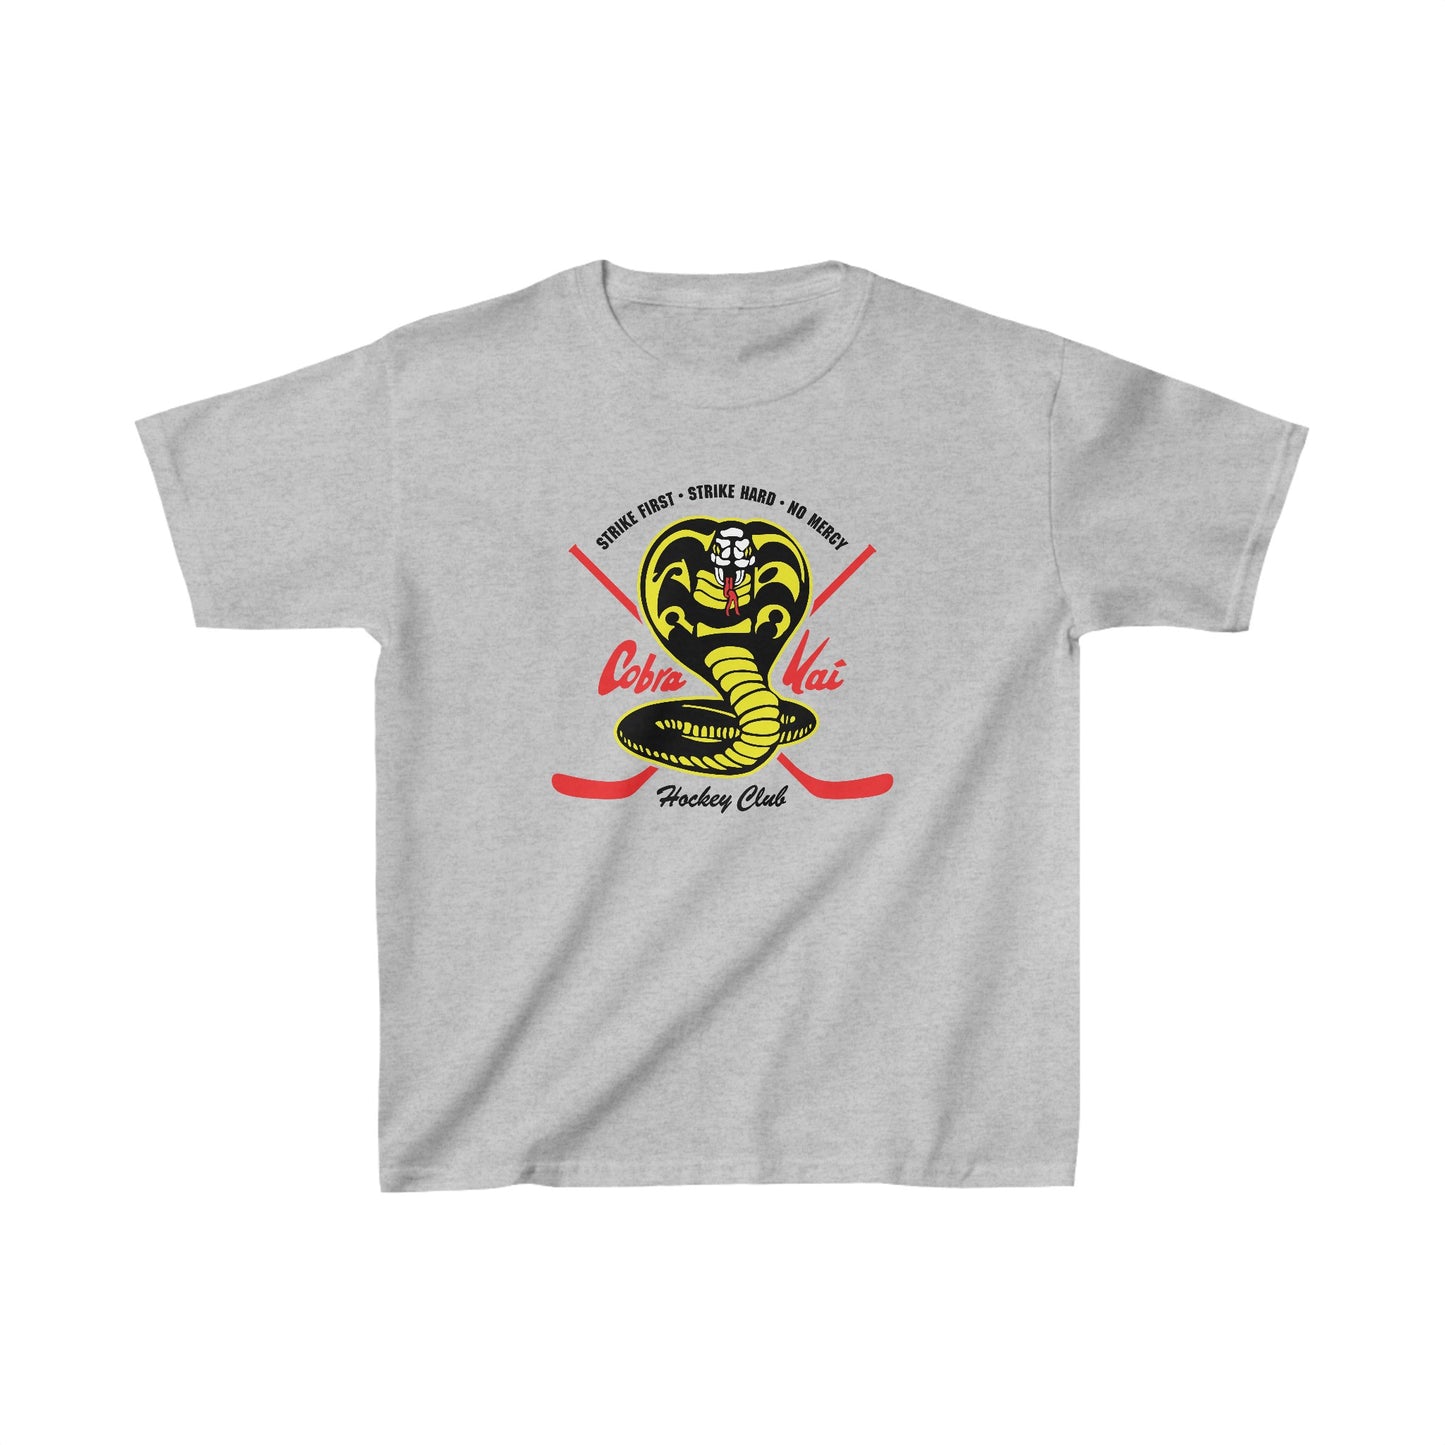 Cobra Kai Hockey - Kids Shirt